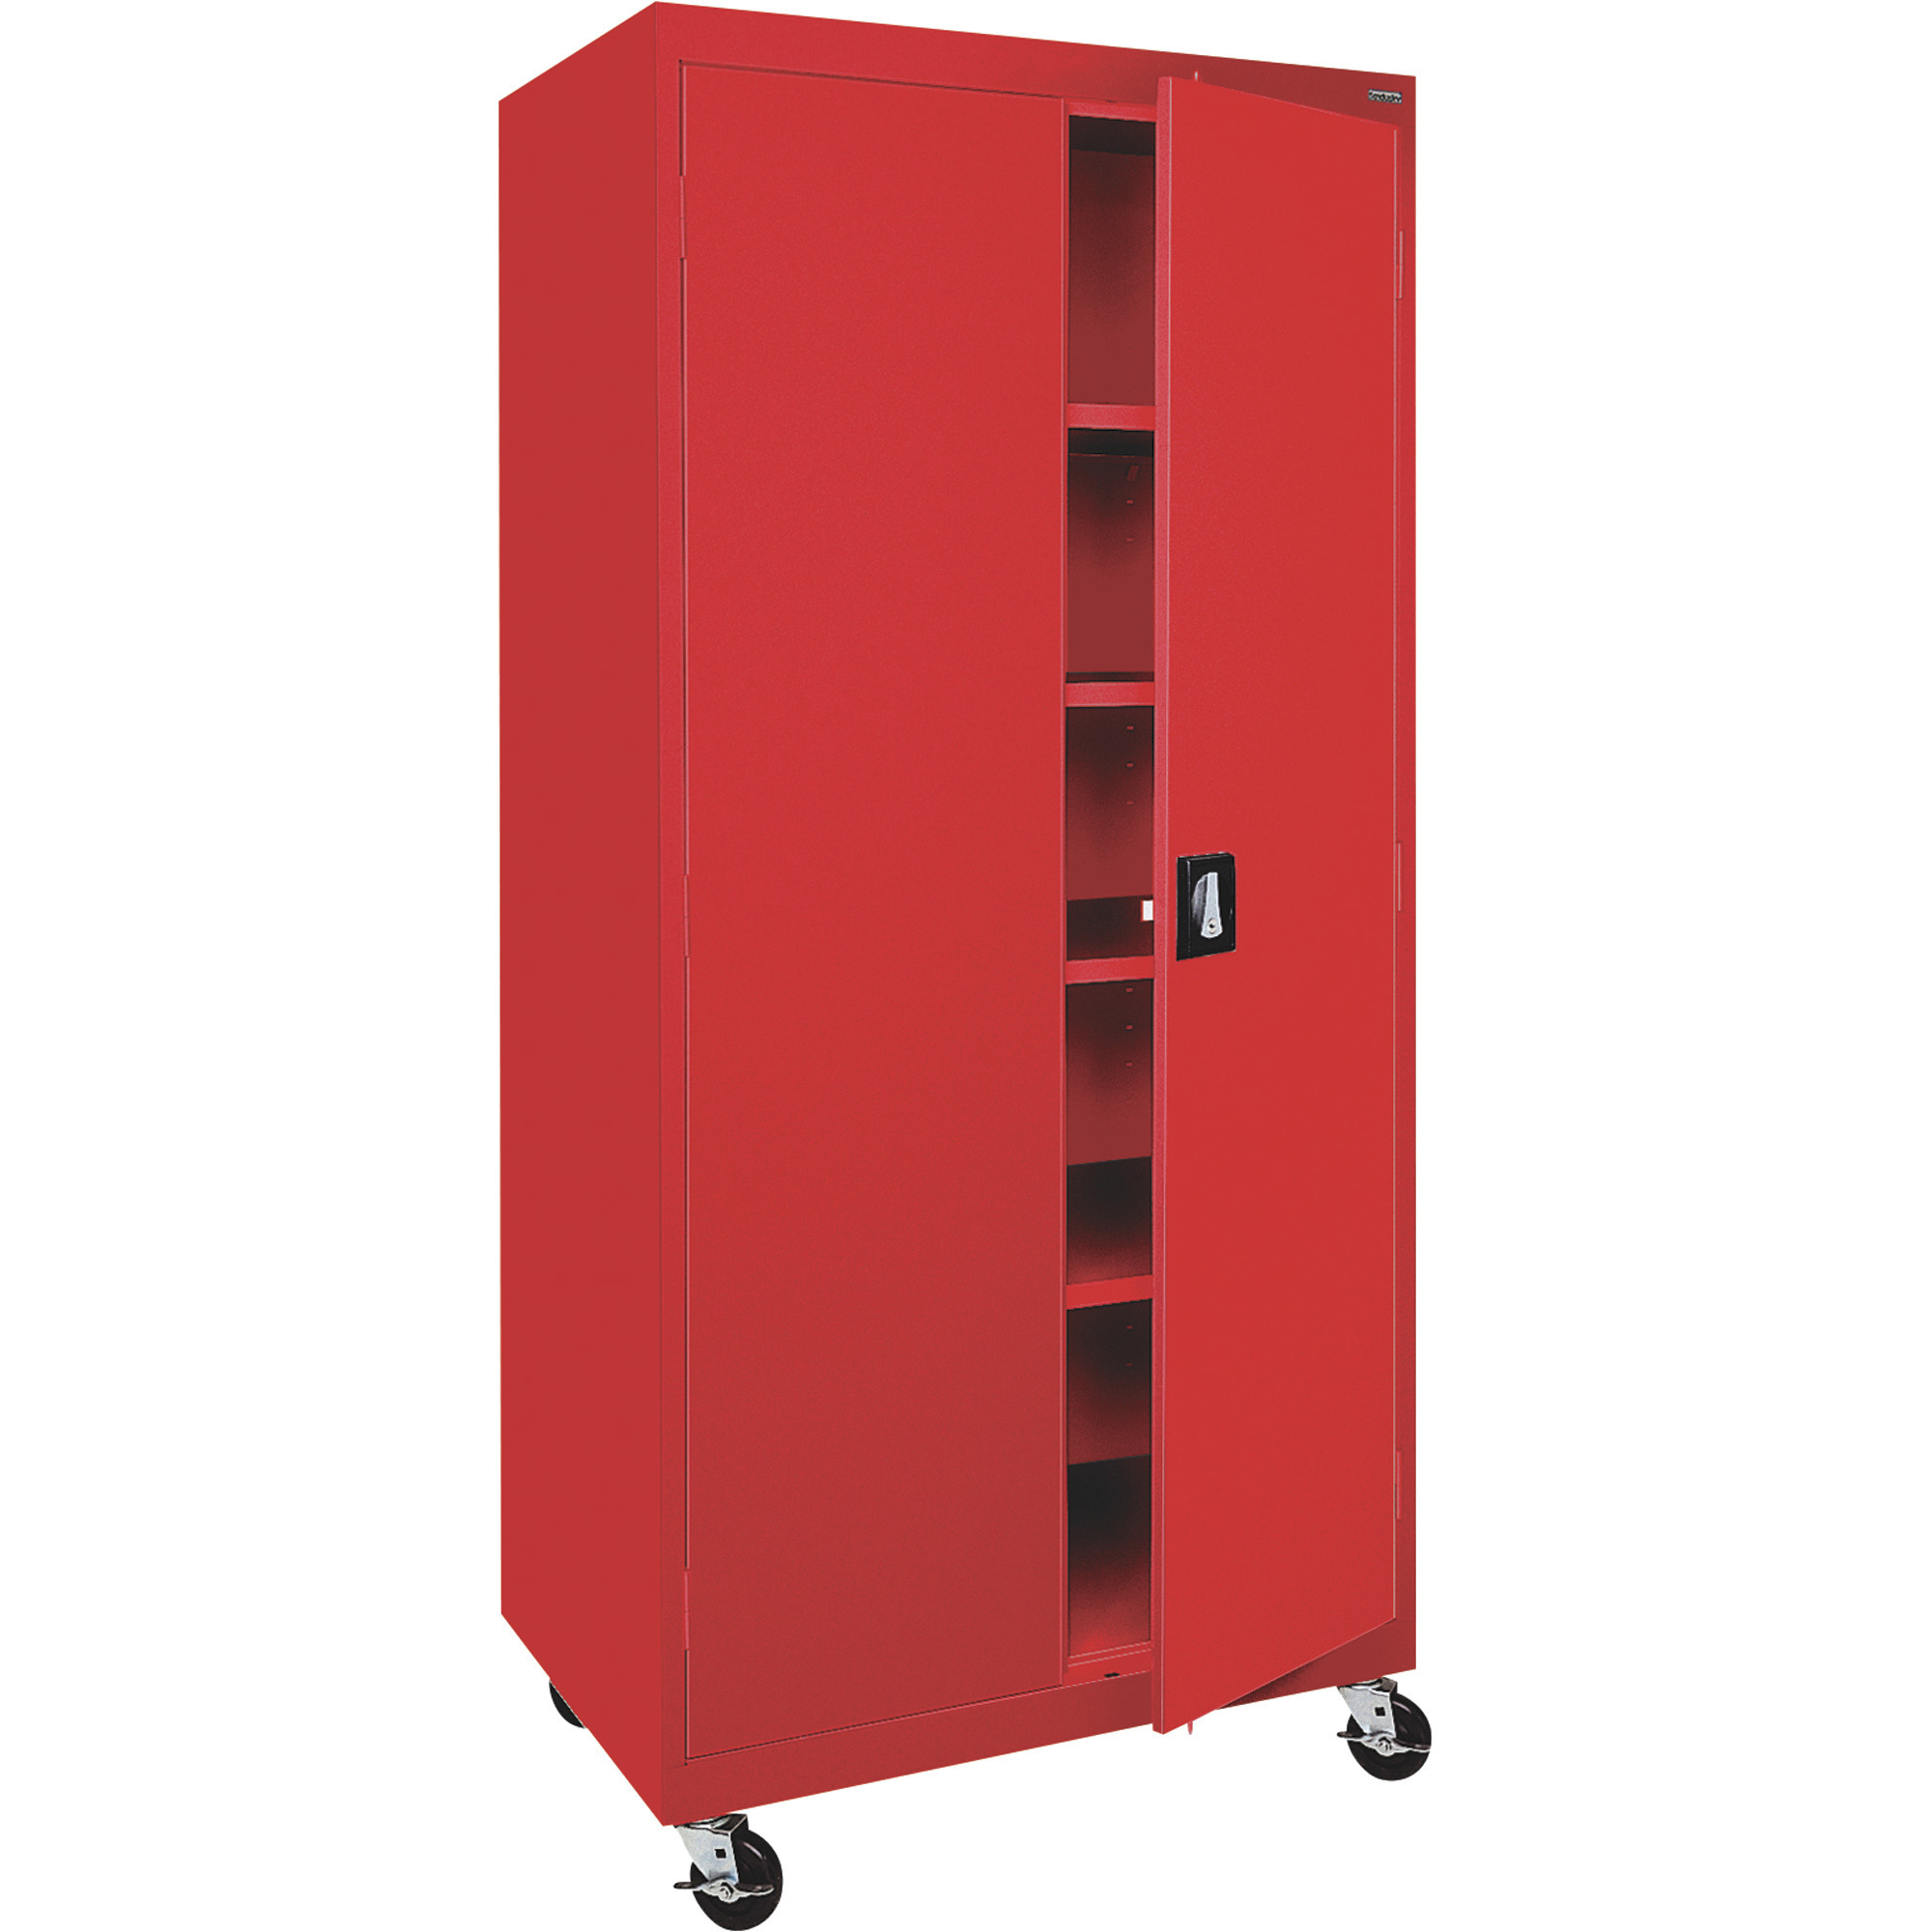 Sandusky Lee Heavy-Duty Welded Steel Mobile Cabinet, 36Inch W x 24Inch D x 78Inch H, Red, Model TA4R362472-01